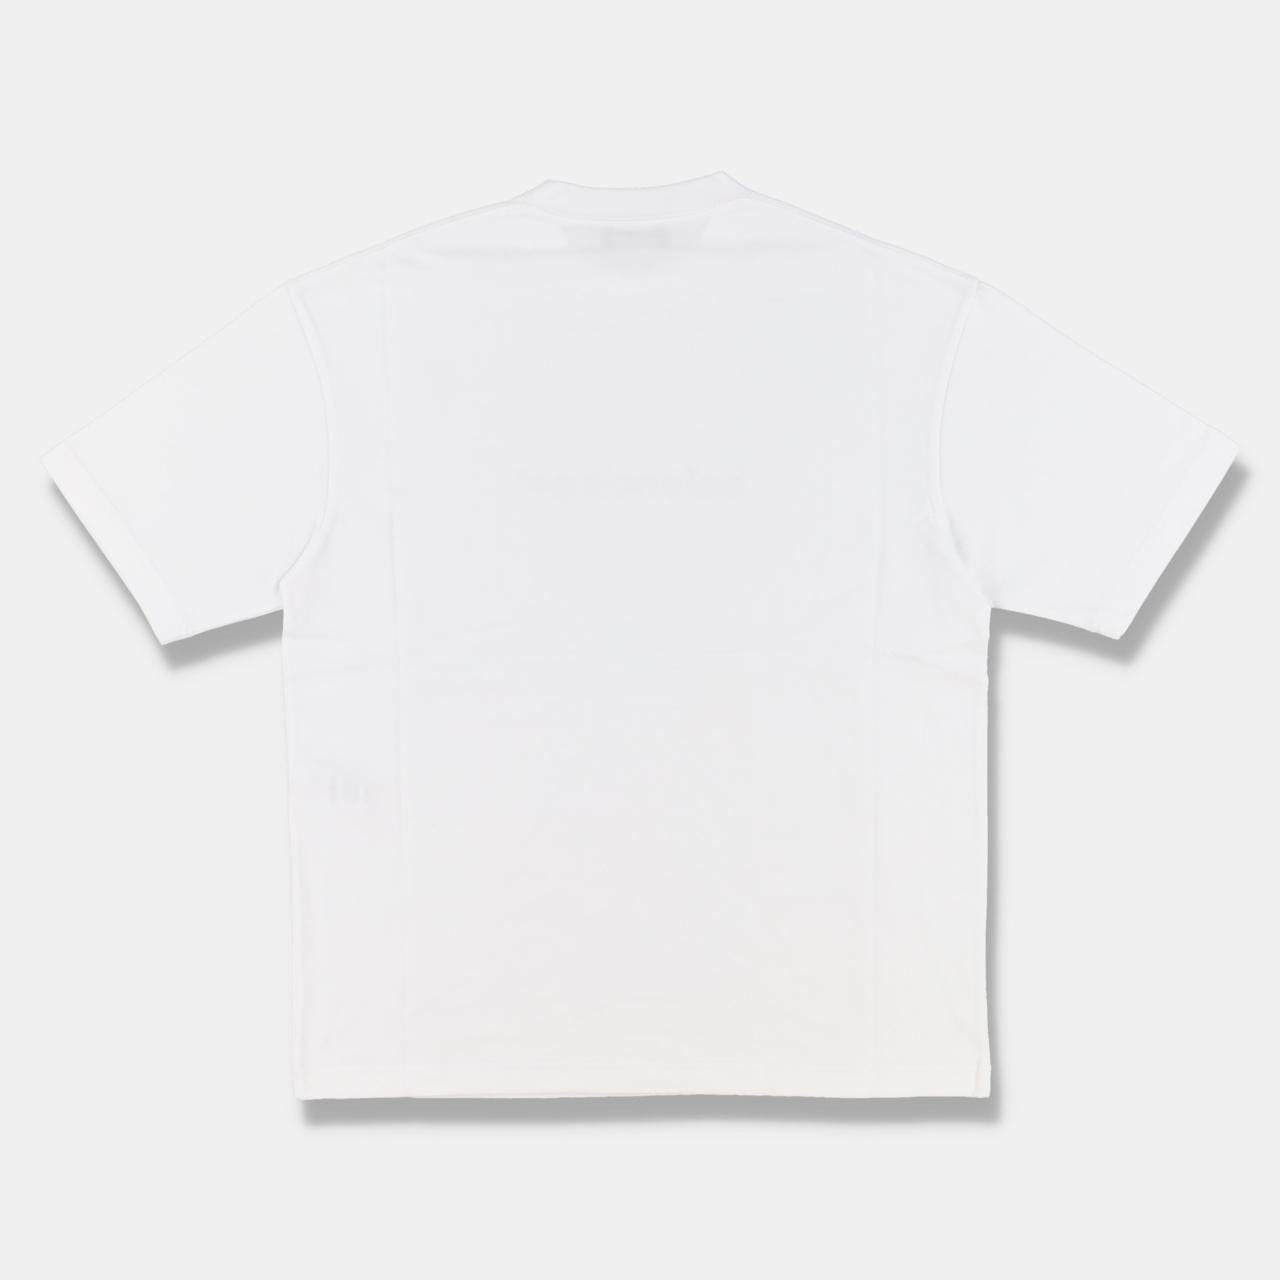 Product Image 2 - Balenciaga White Copyright Logo T-Shirt

-Size